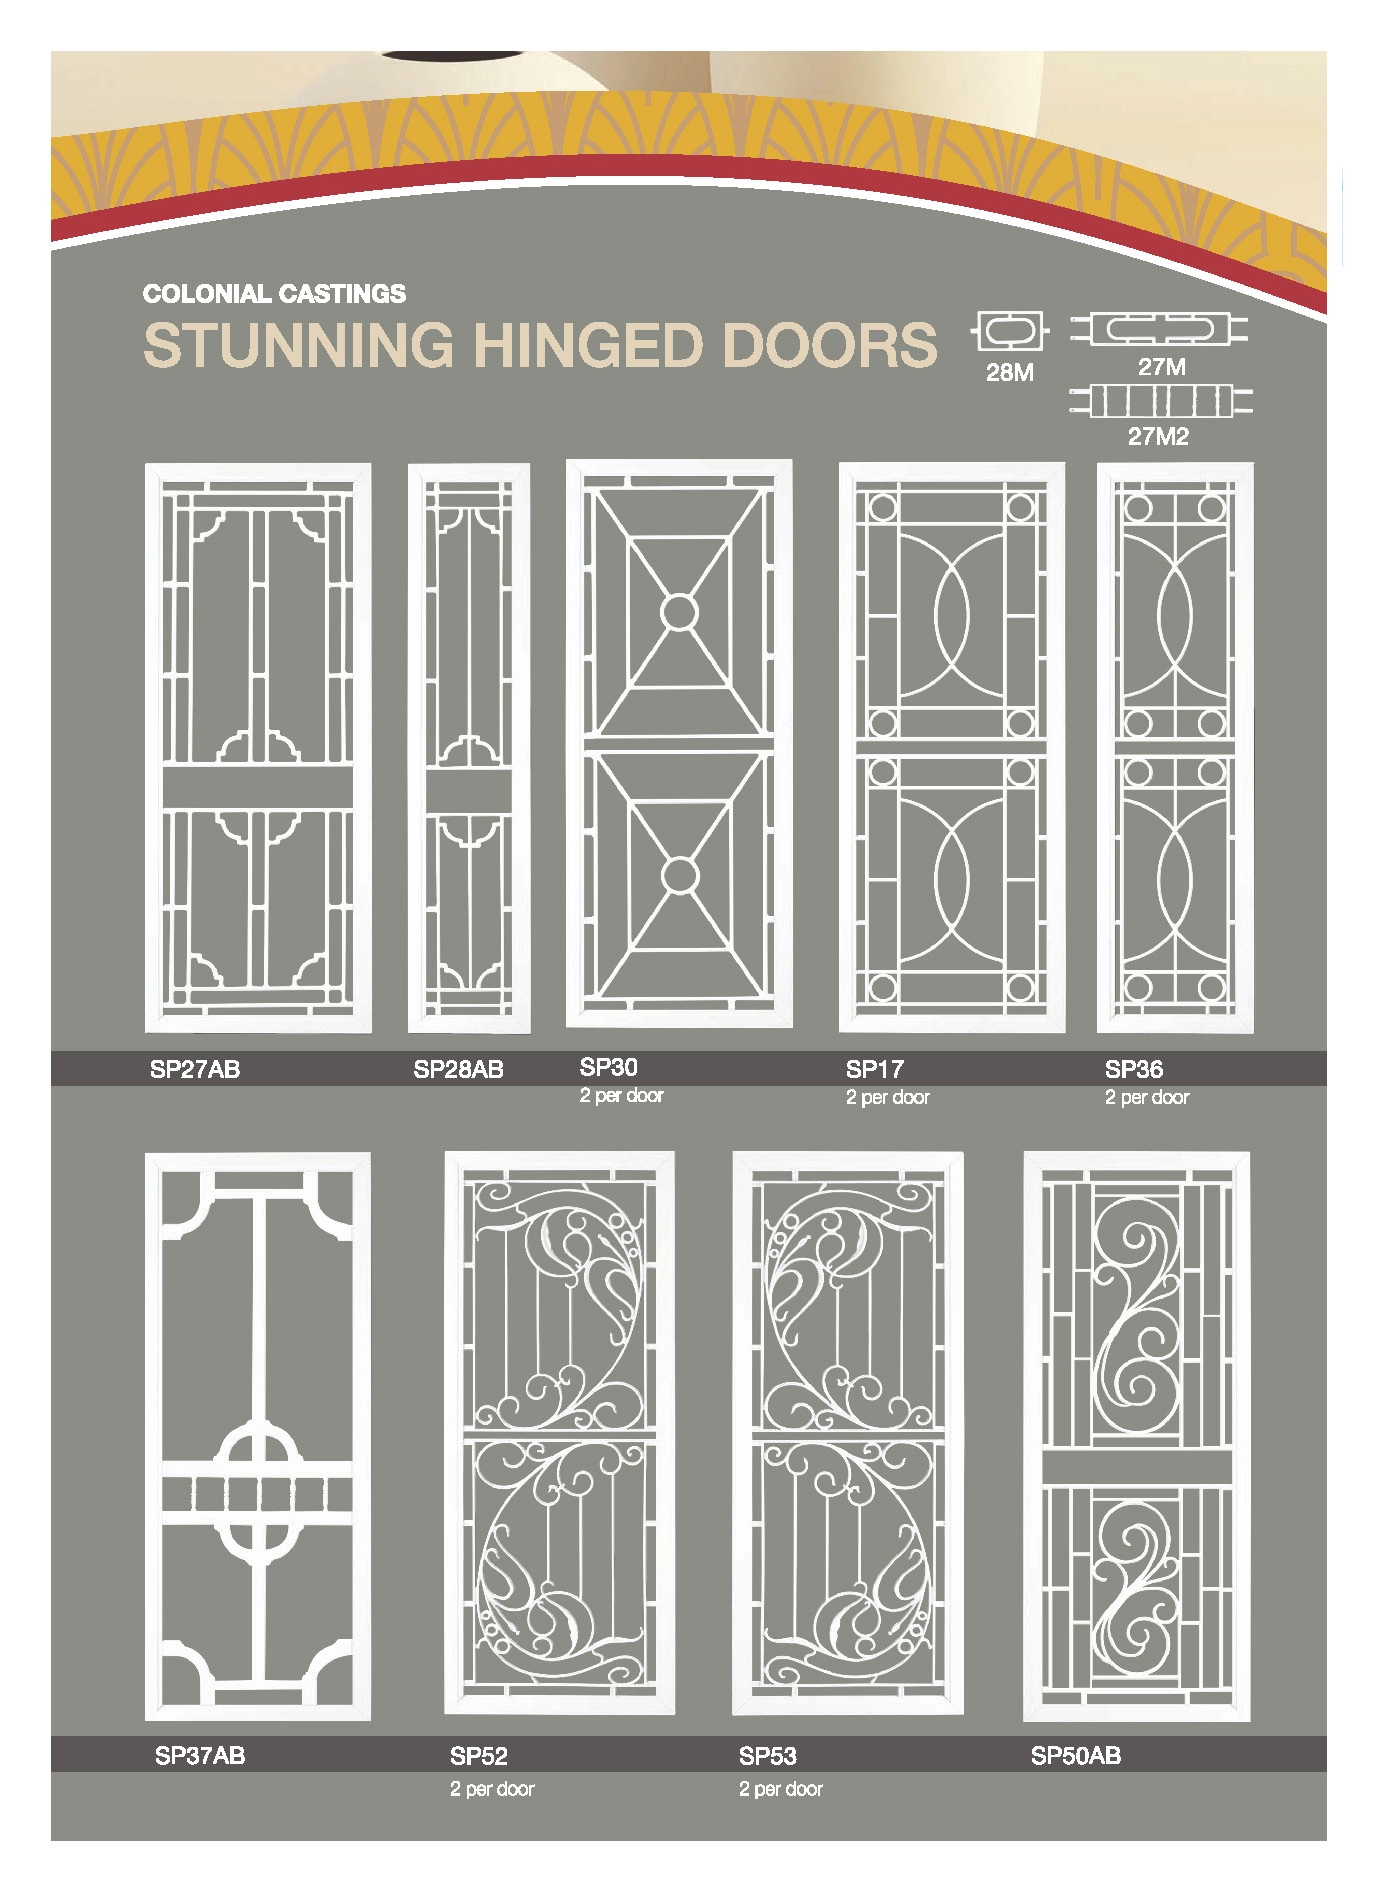 Art deco range doors with intricate details